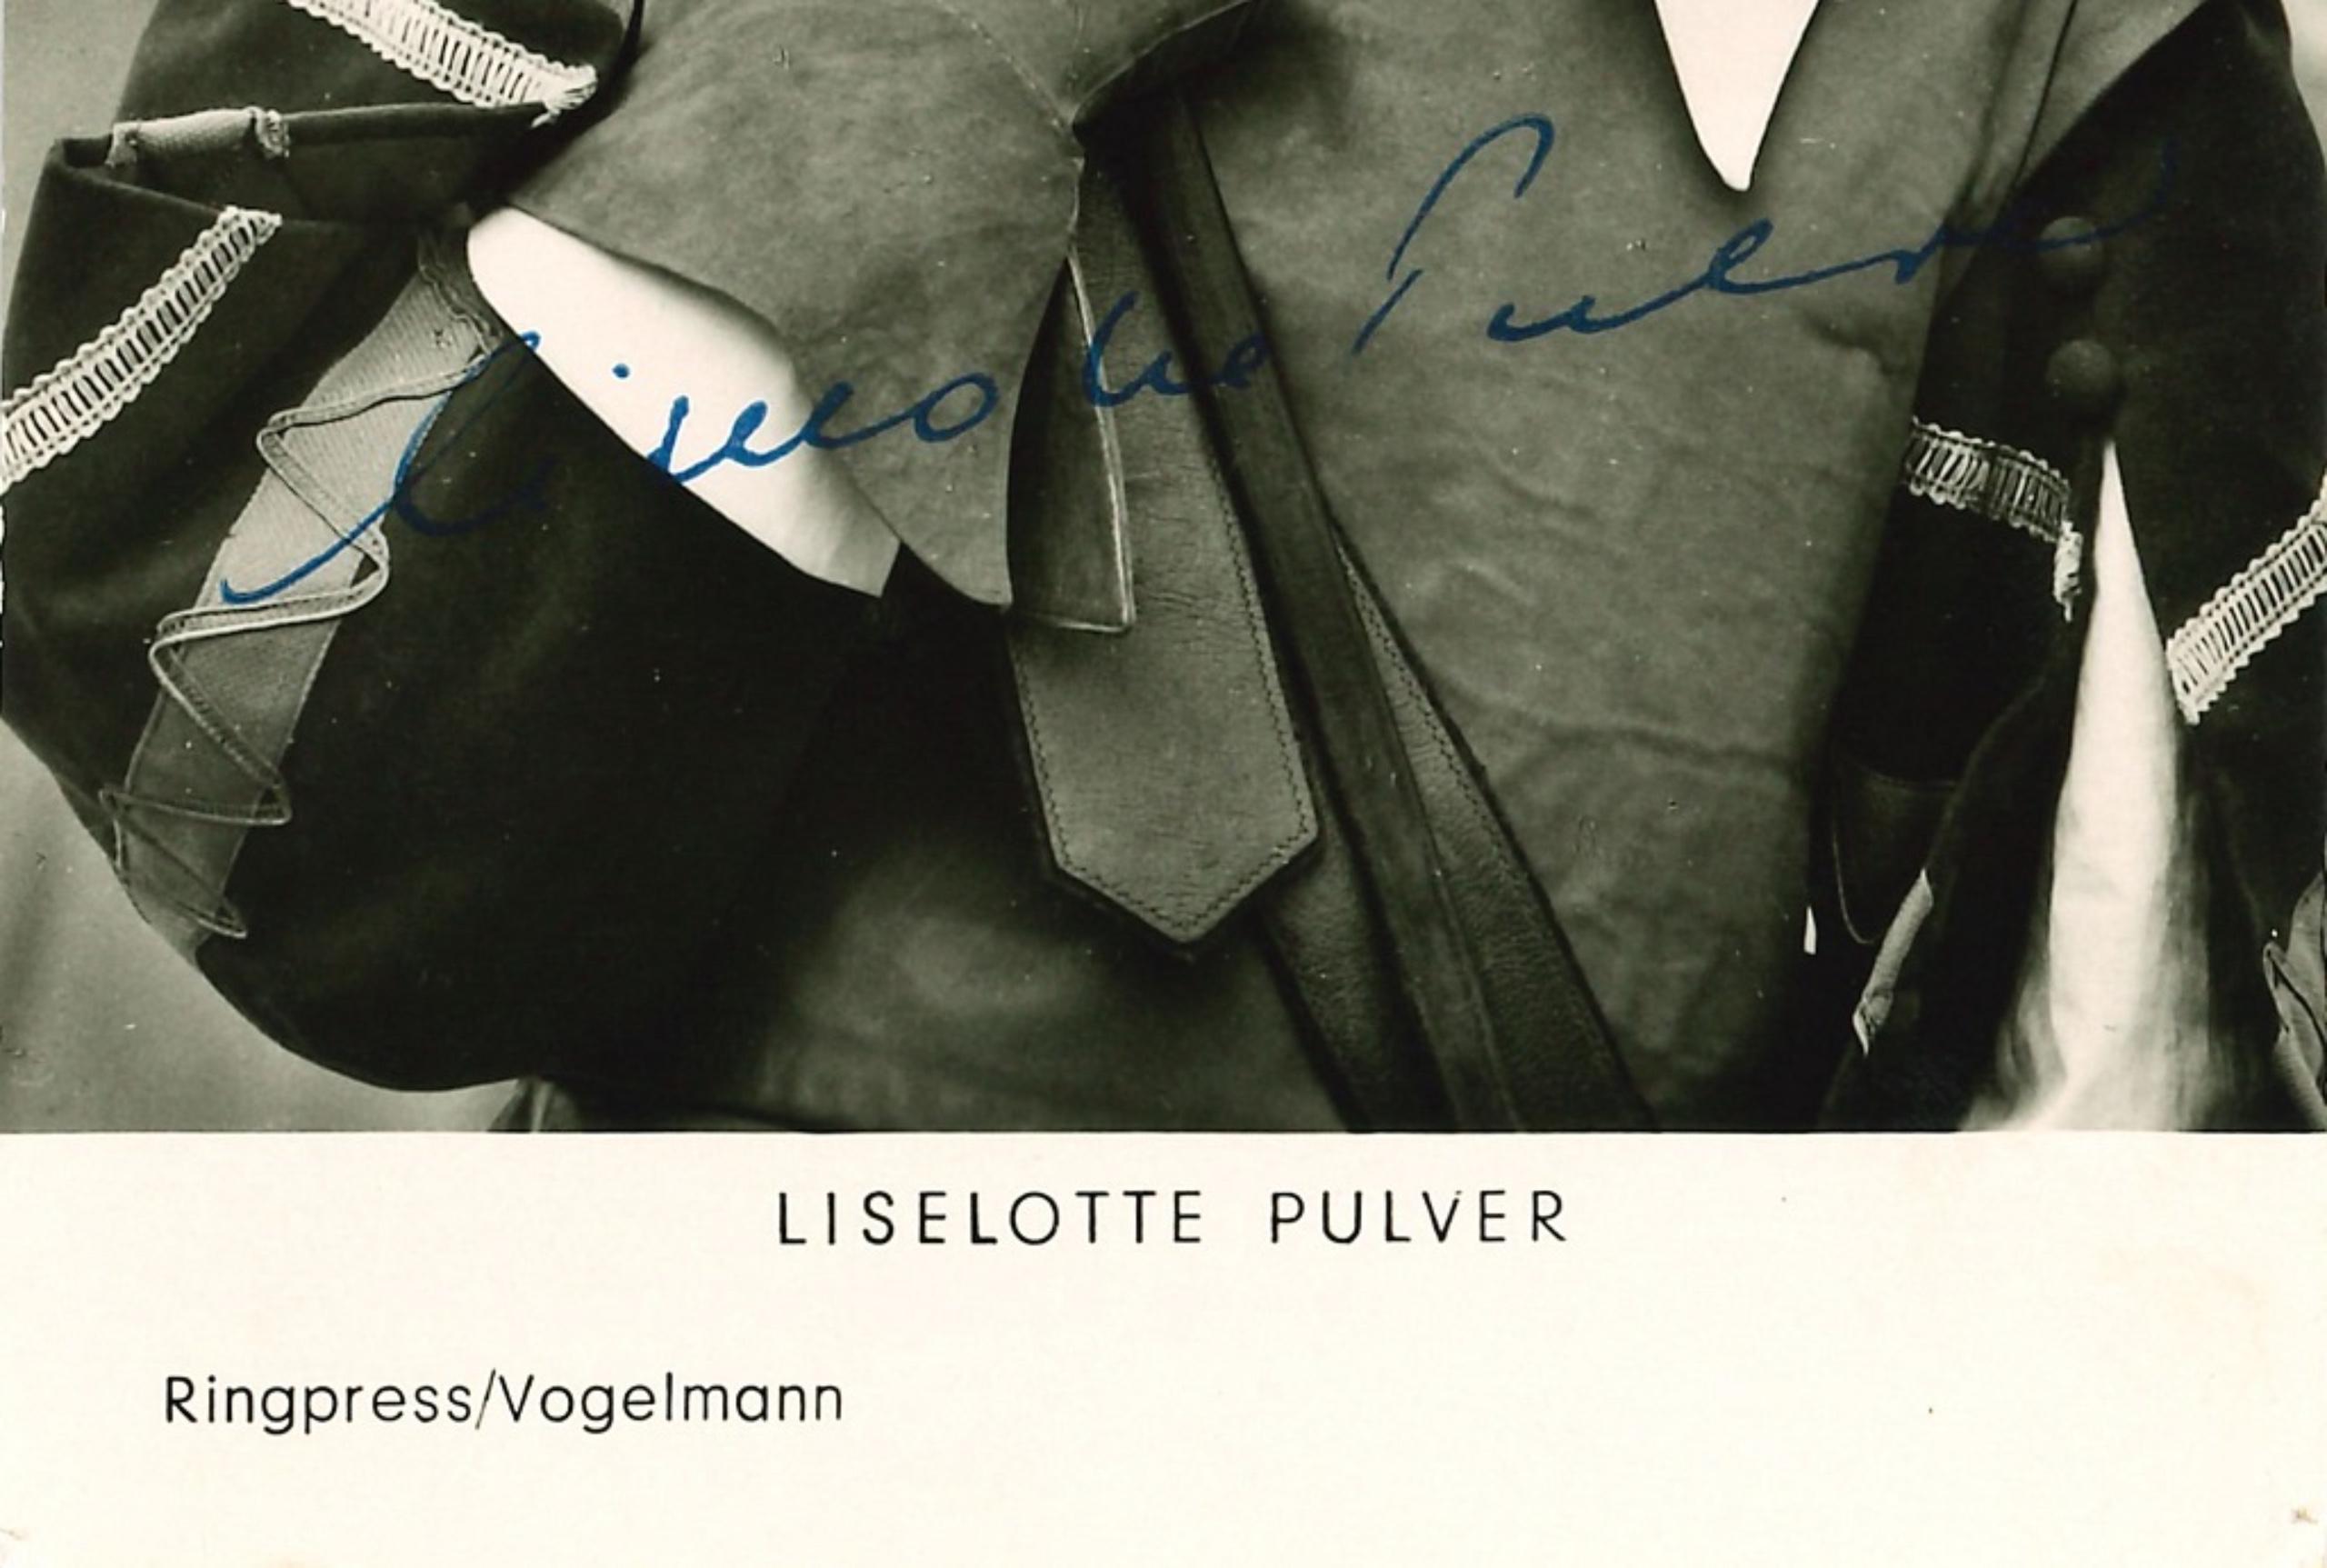 Autographisches Porträt von Liselotte Pulver - Original b/w Postcard - 1960er Jahre – Photograph von Unknown